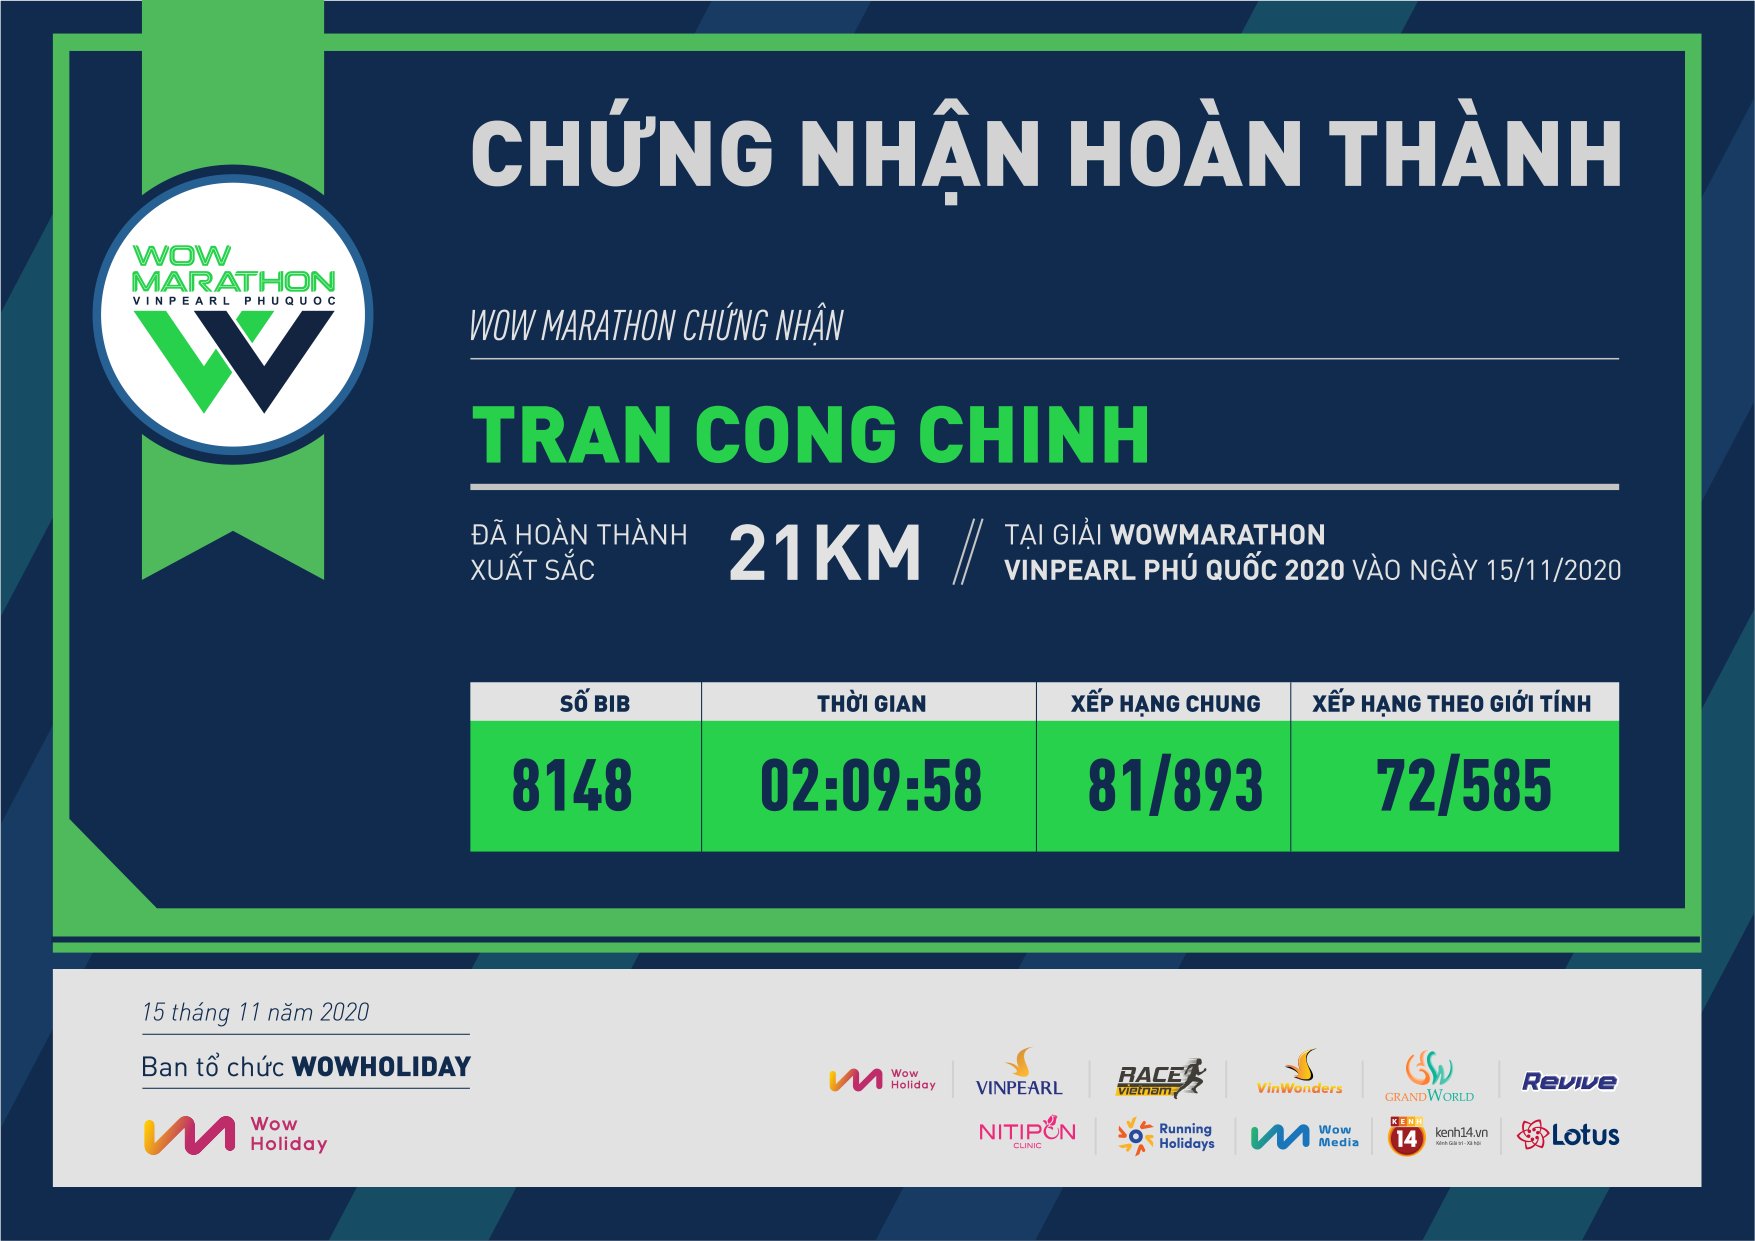 8148 - Tran Cong Chinh